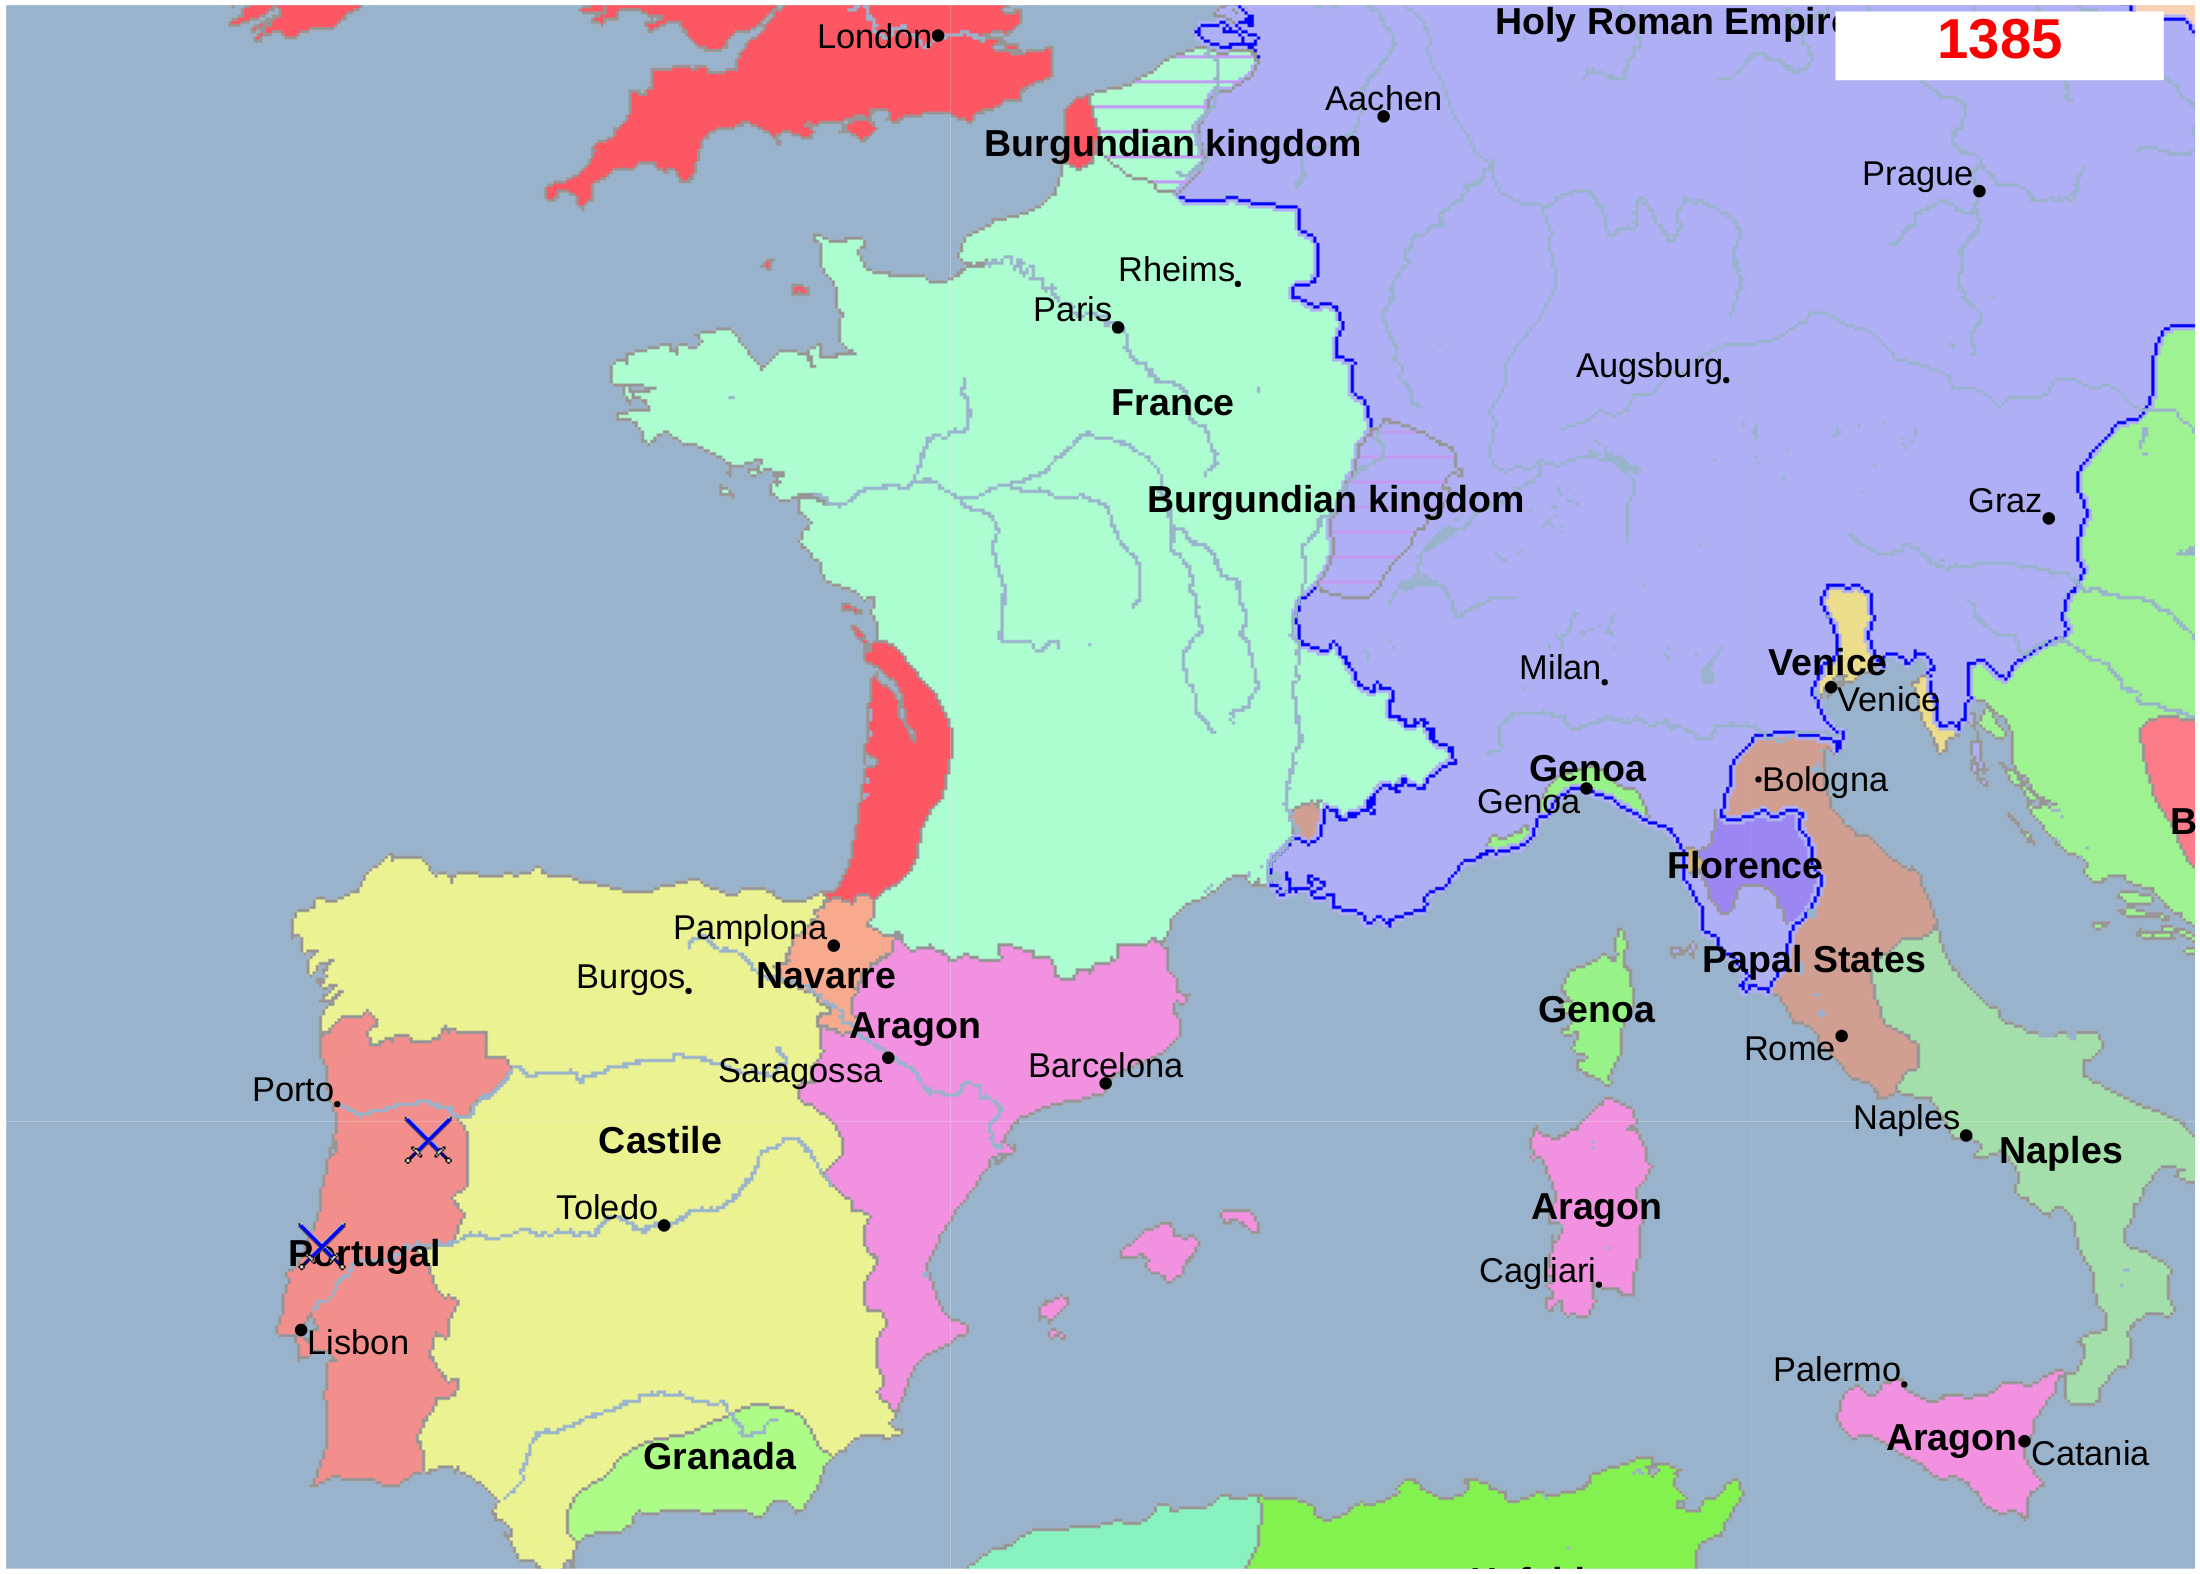 geacron_historical_context_MAP_aljubarrota